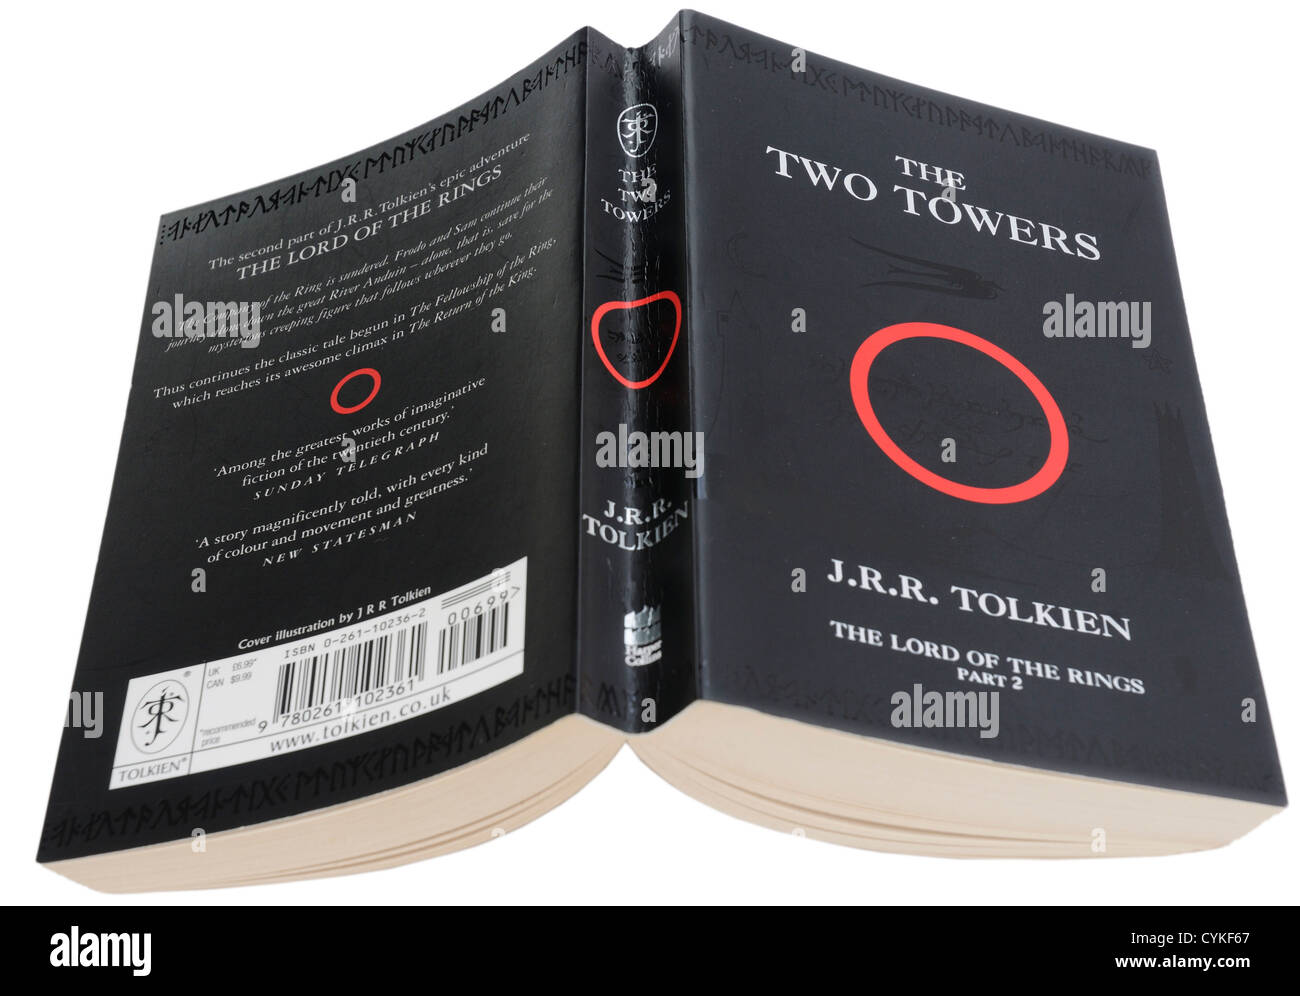 Las Dos Torres, la segunda parte de El Señor de los anillos de JRR Tolkein Foto de stock